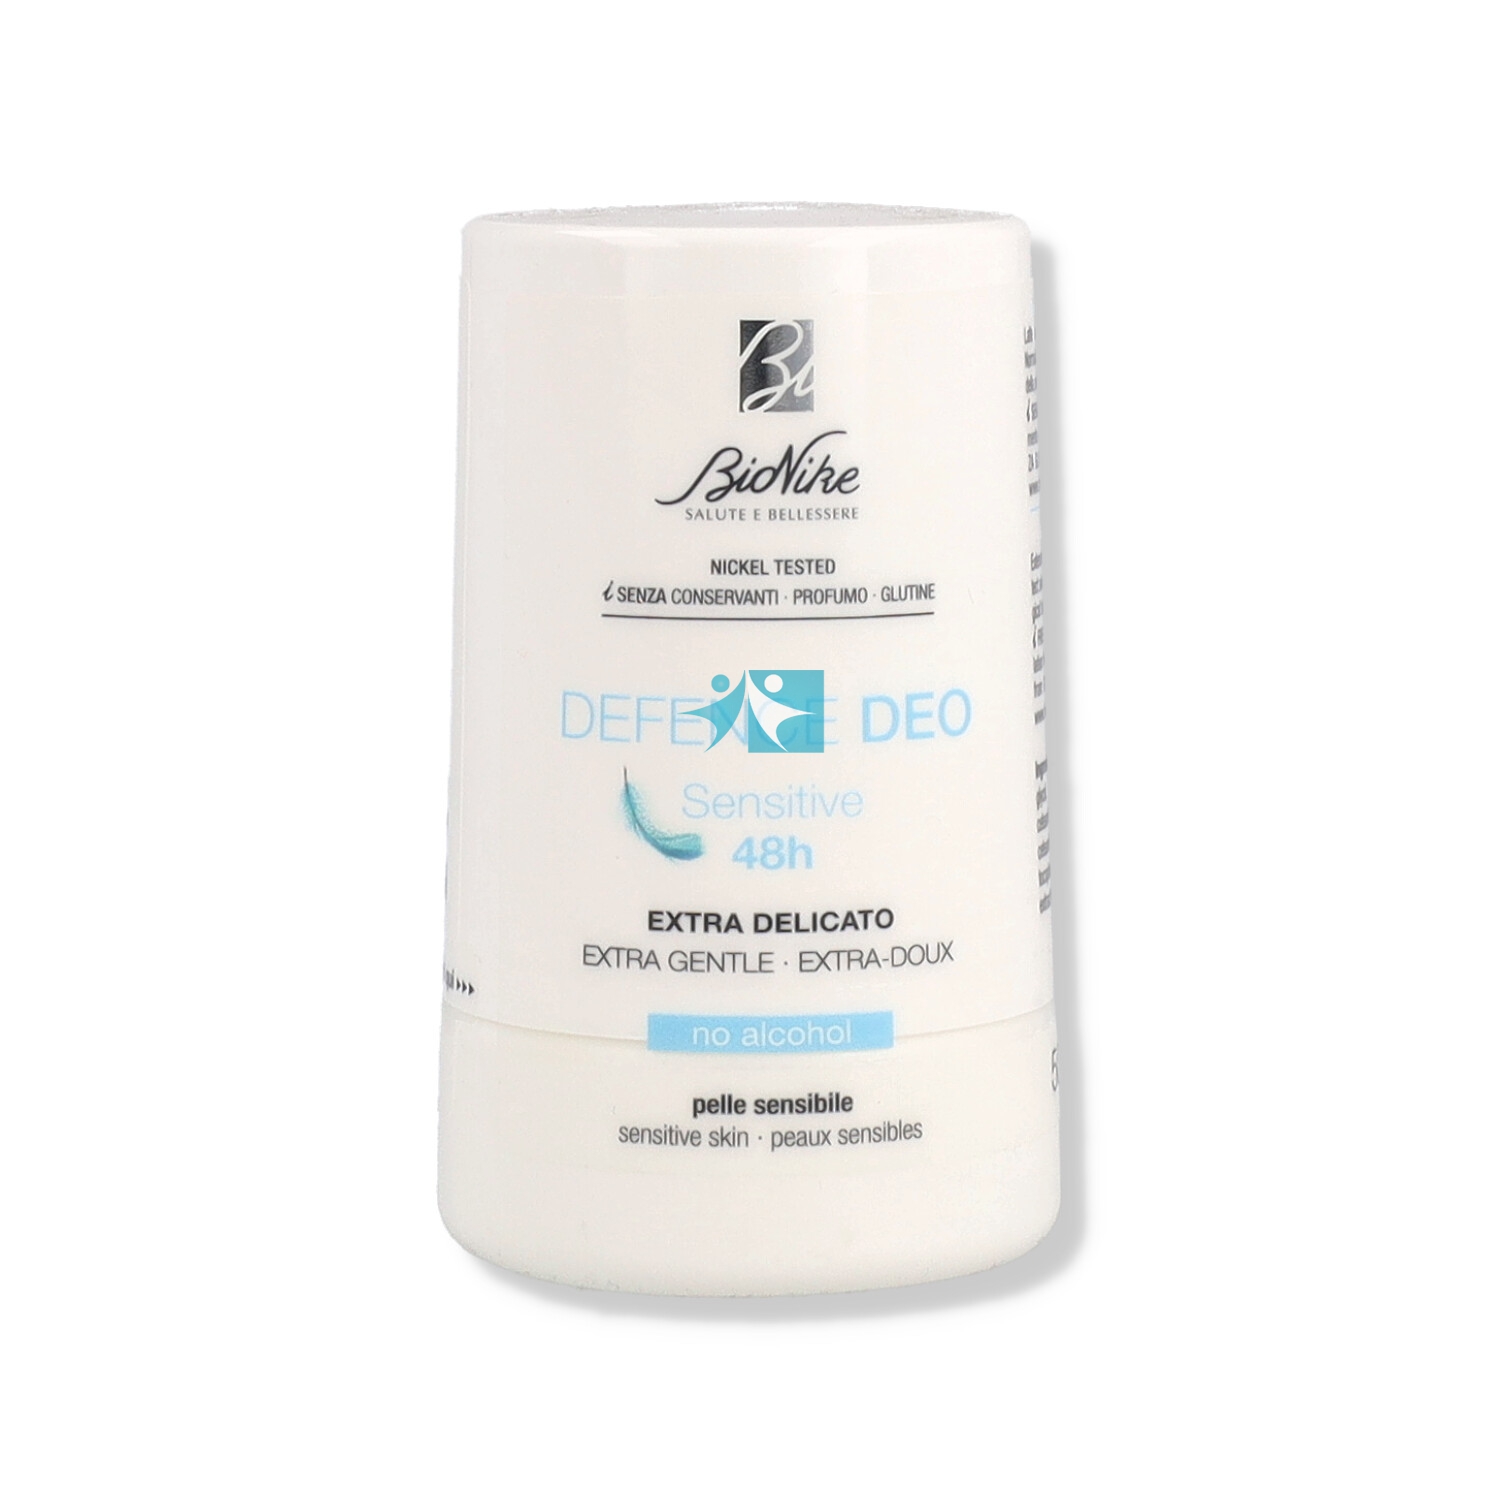 BioNike Linea Defence Deo Sensitive 48h Deodorante Delicato Roll-on 50 ml